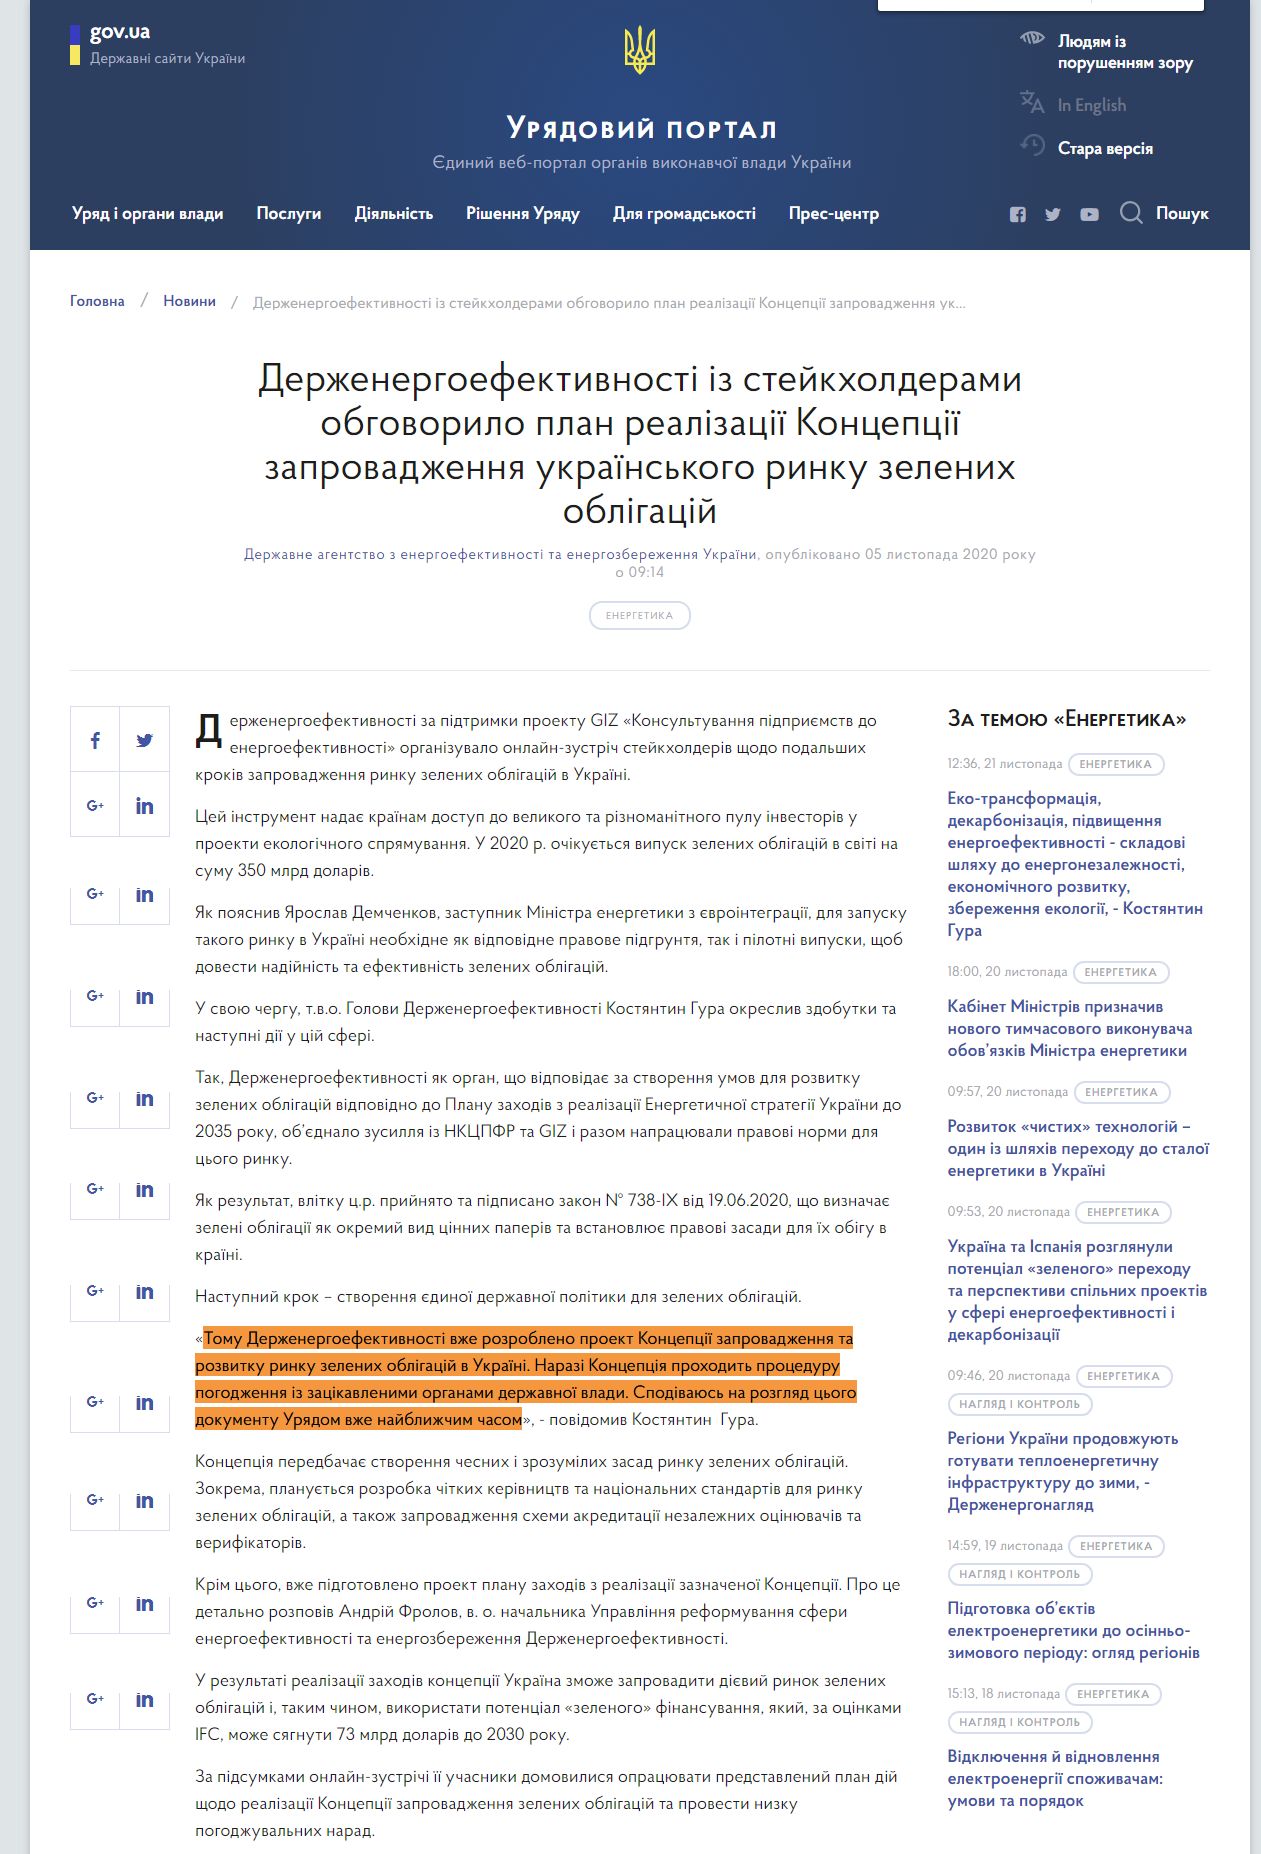 https://www.kmu.gov.ua/news/derzhenergoefektivnosti-iz-stejkholderami-obgovorilo-plan-realizaciyi-koncepciyi-zaprovadzhennya-ukrayinskogo-rinku-zelenih-obligacij